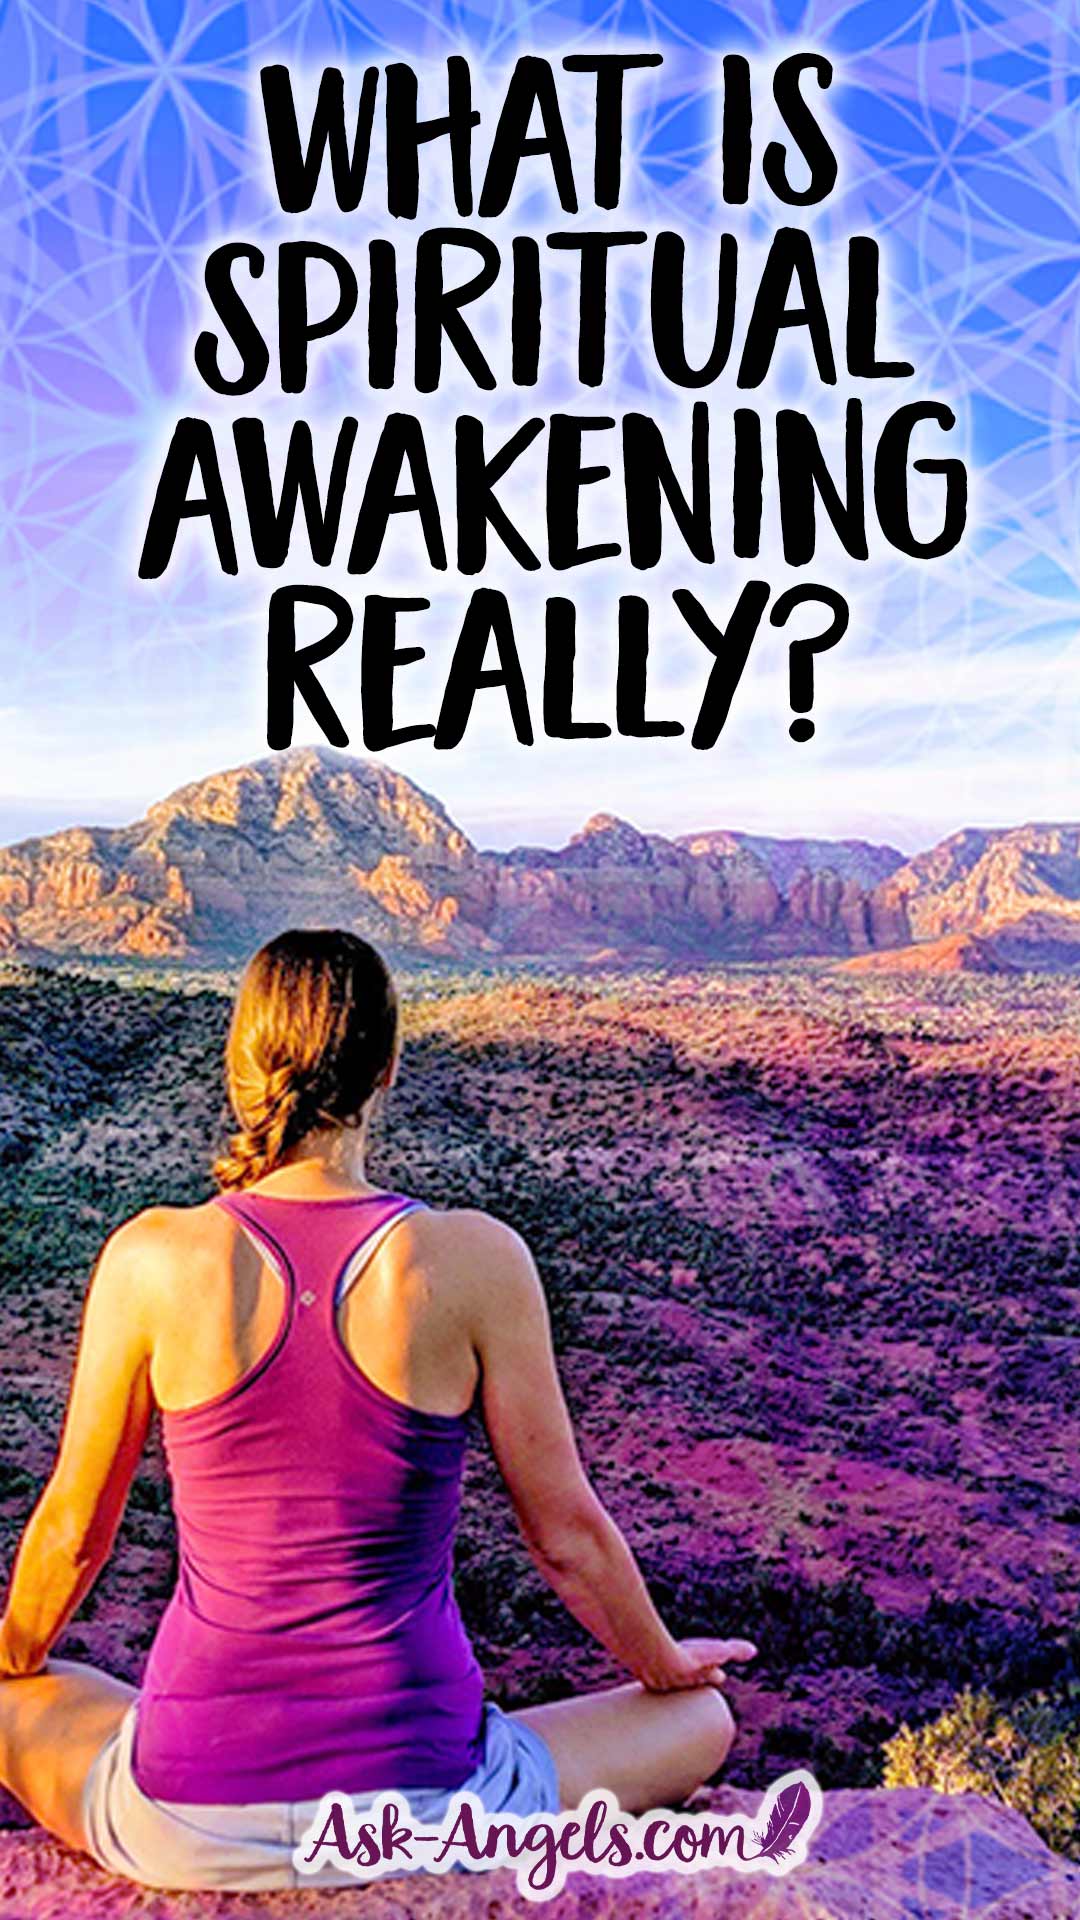 What is spiritual awakening really?